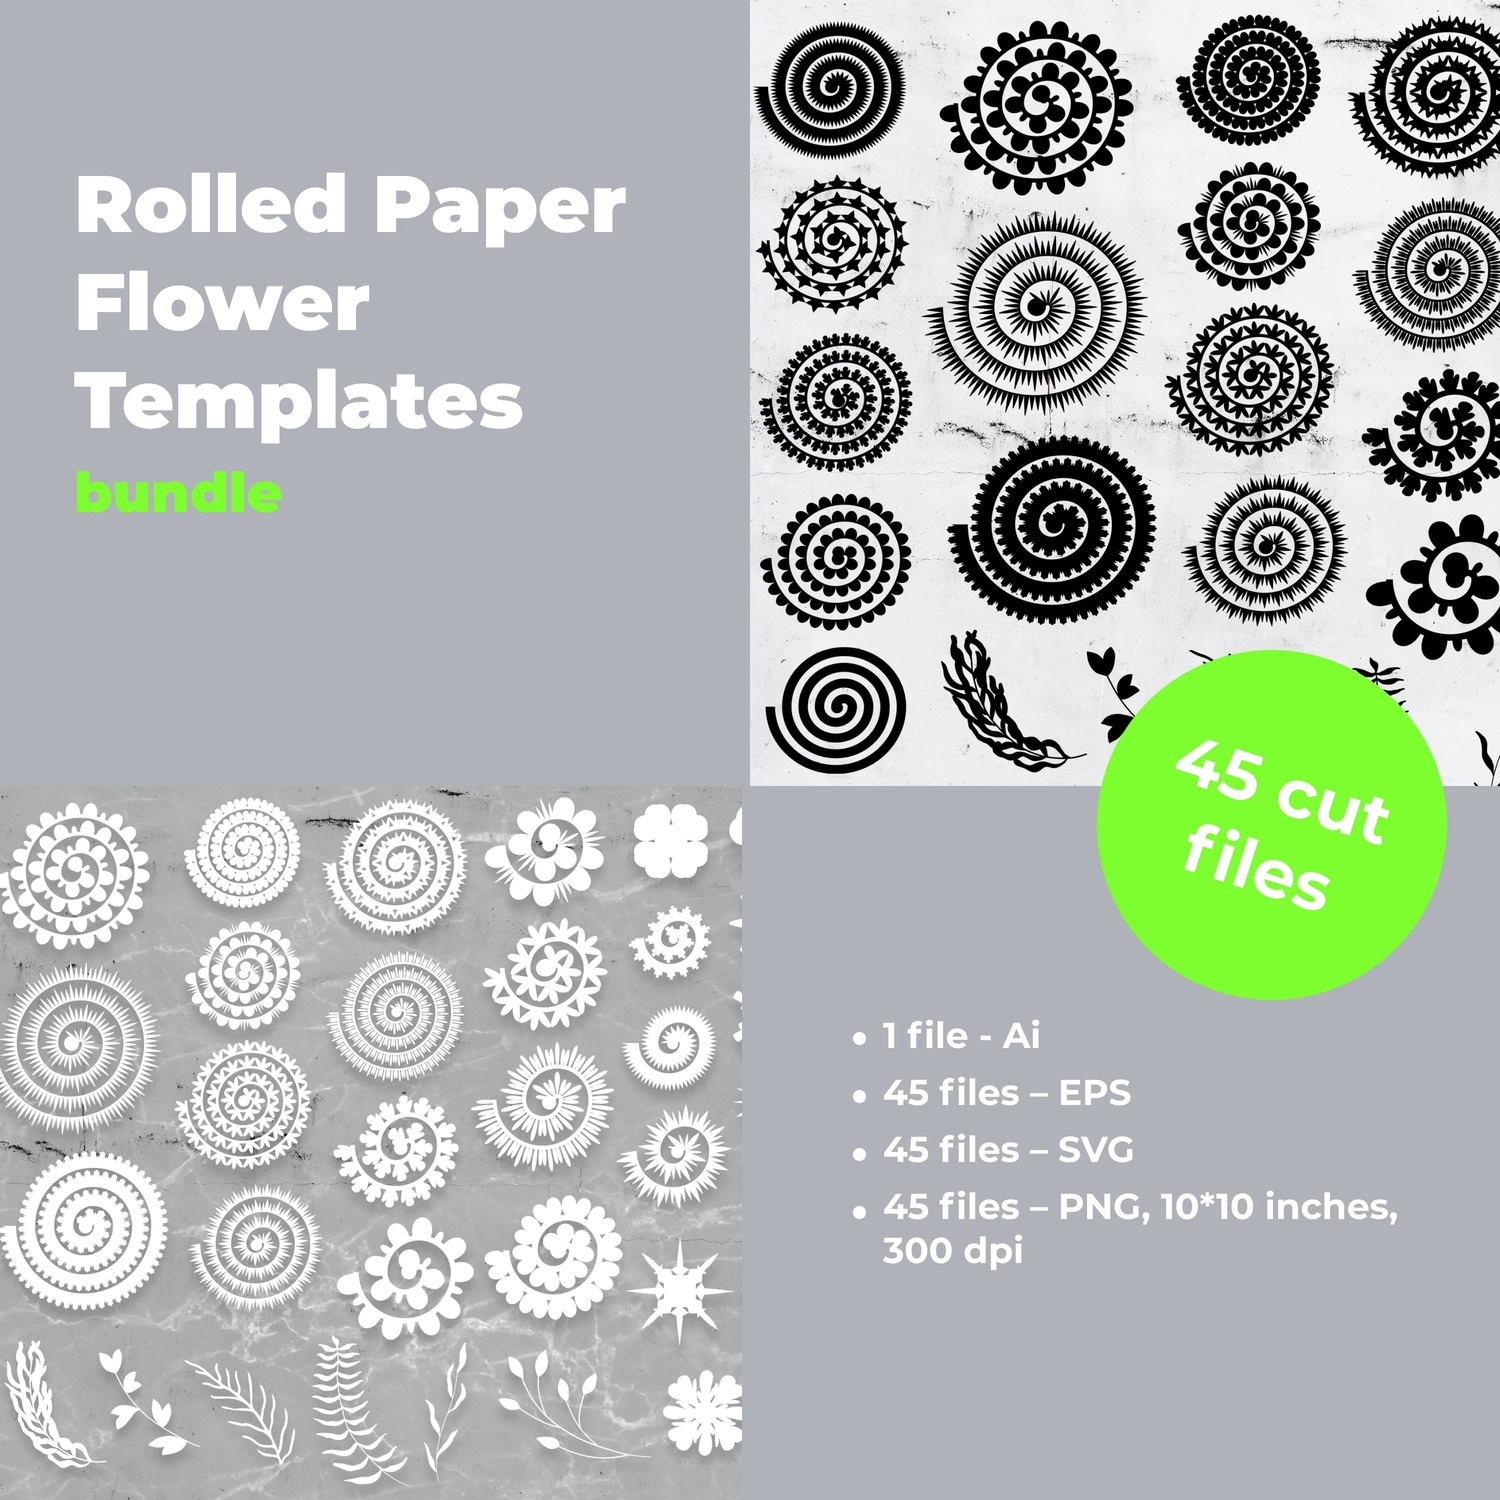 Rolled Paper Flower Templates SVG, Flower Center SVG bundle main cover.